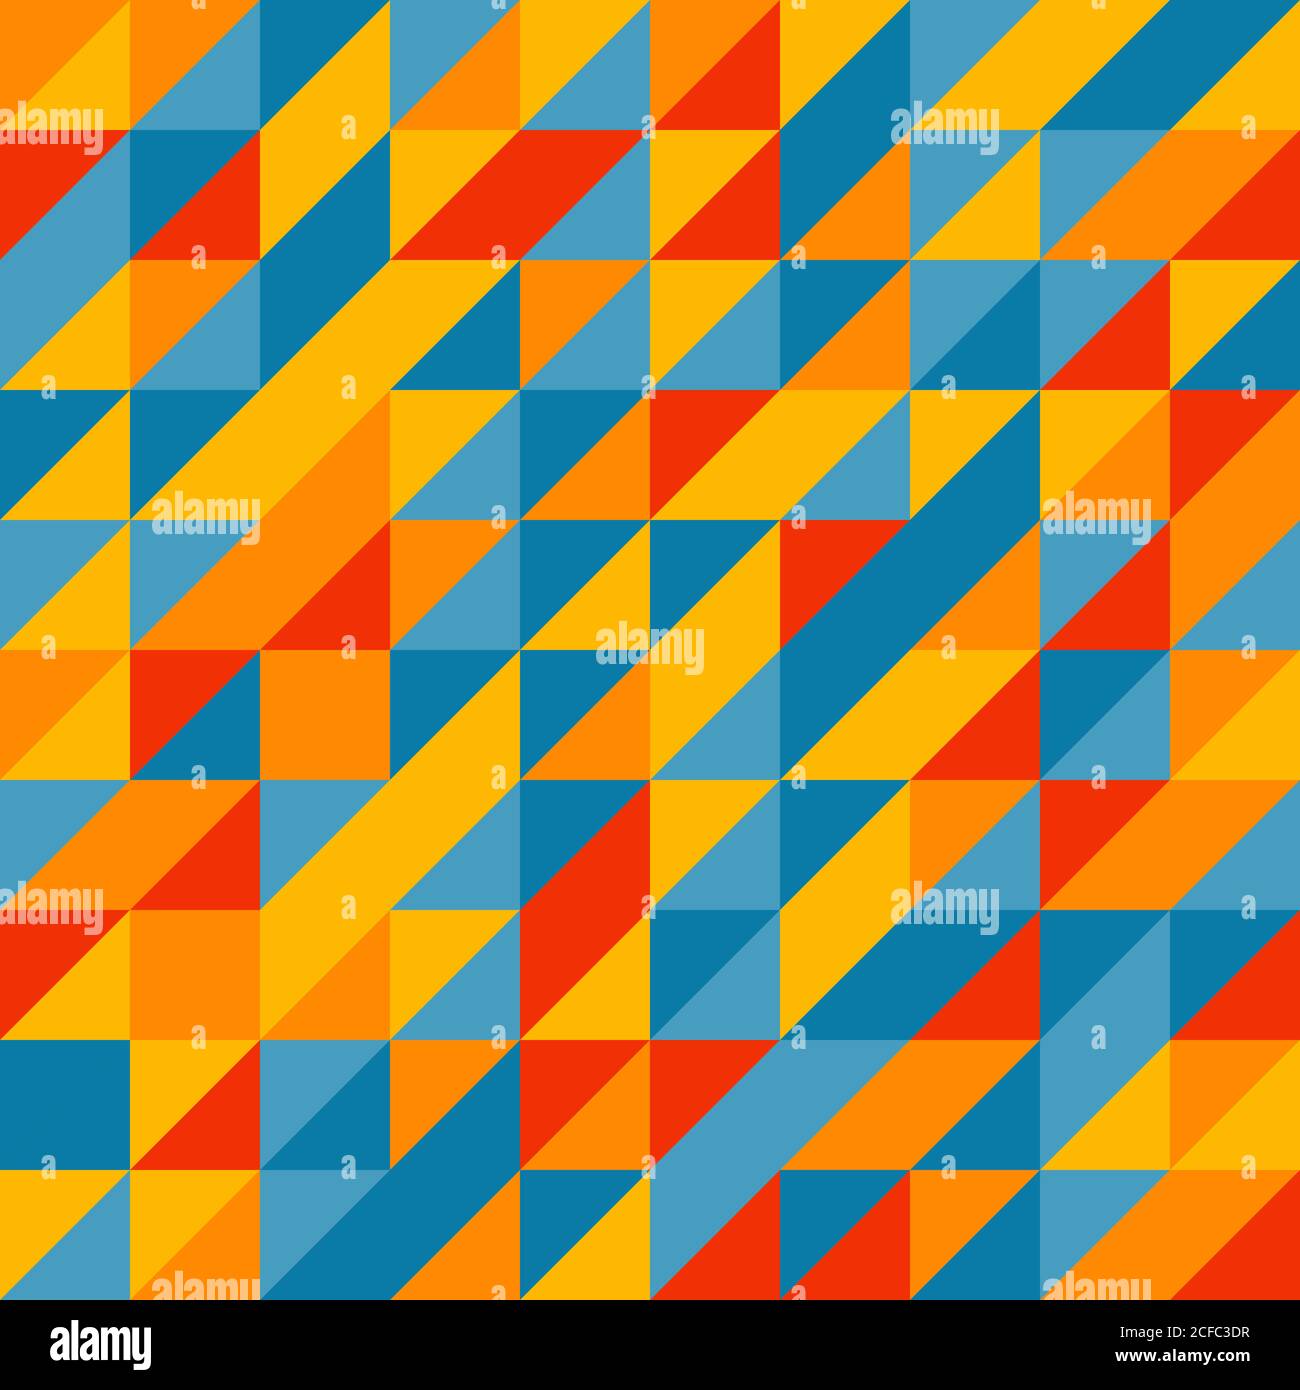 Schema geometrico triangoli astratti. Campioni colorati casuali. Sfondo vettoriale senza giunture. Solo cinque colori - facile da colorare. Illustrazione Vettoriale